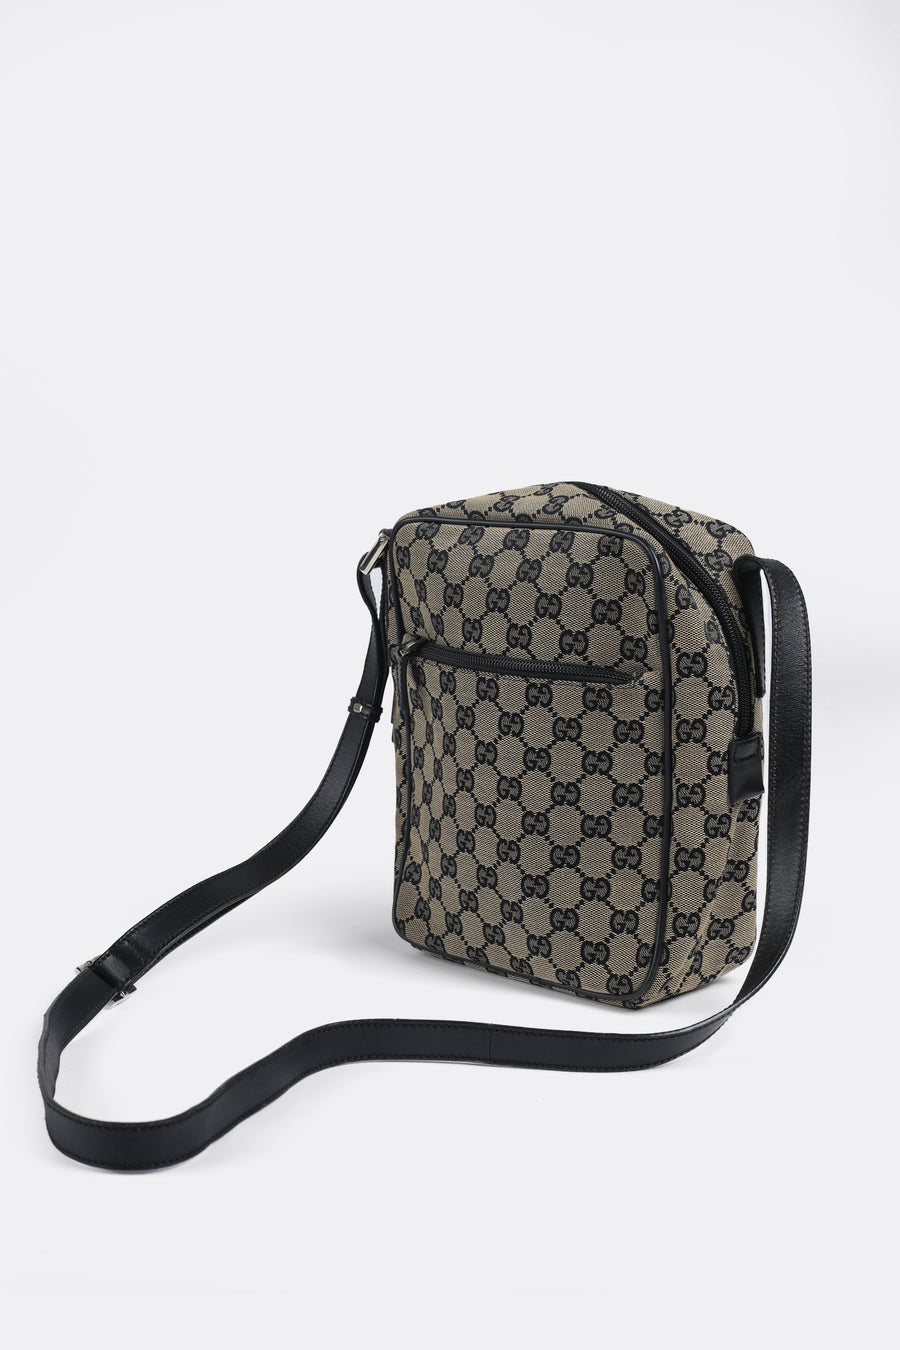 Gucci Marmont Handbags for sale in Sacramento, California | Facebook  Marketplace | Facebook